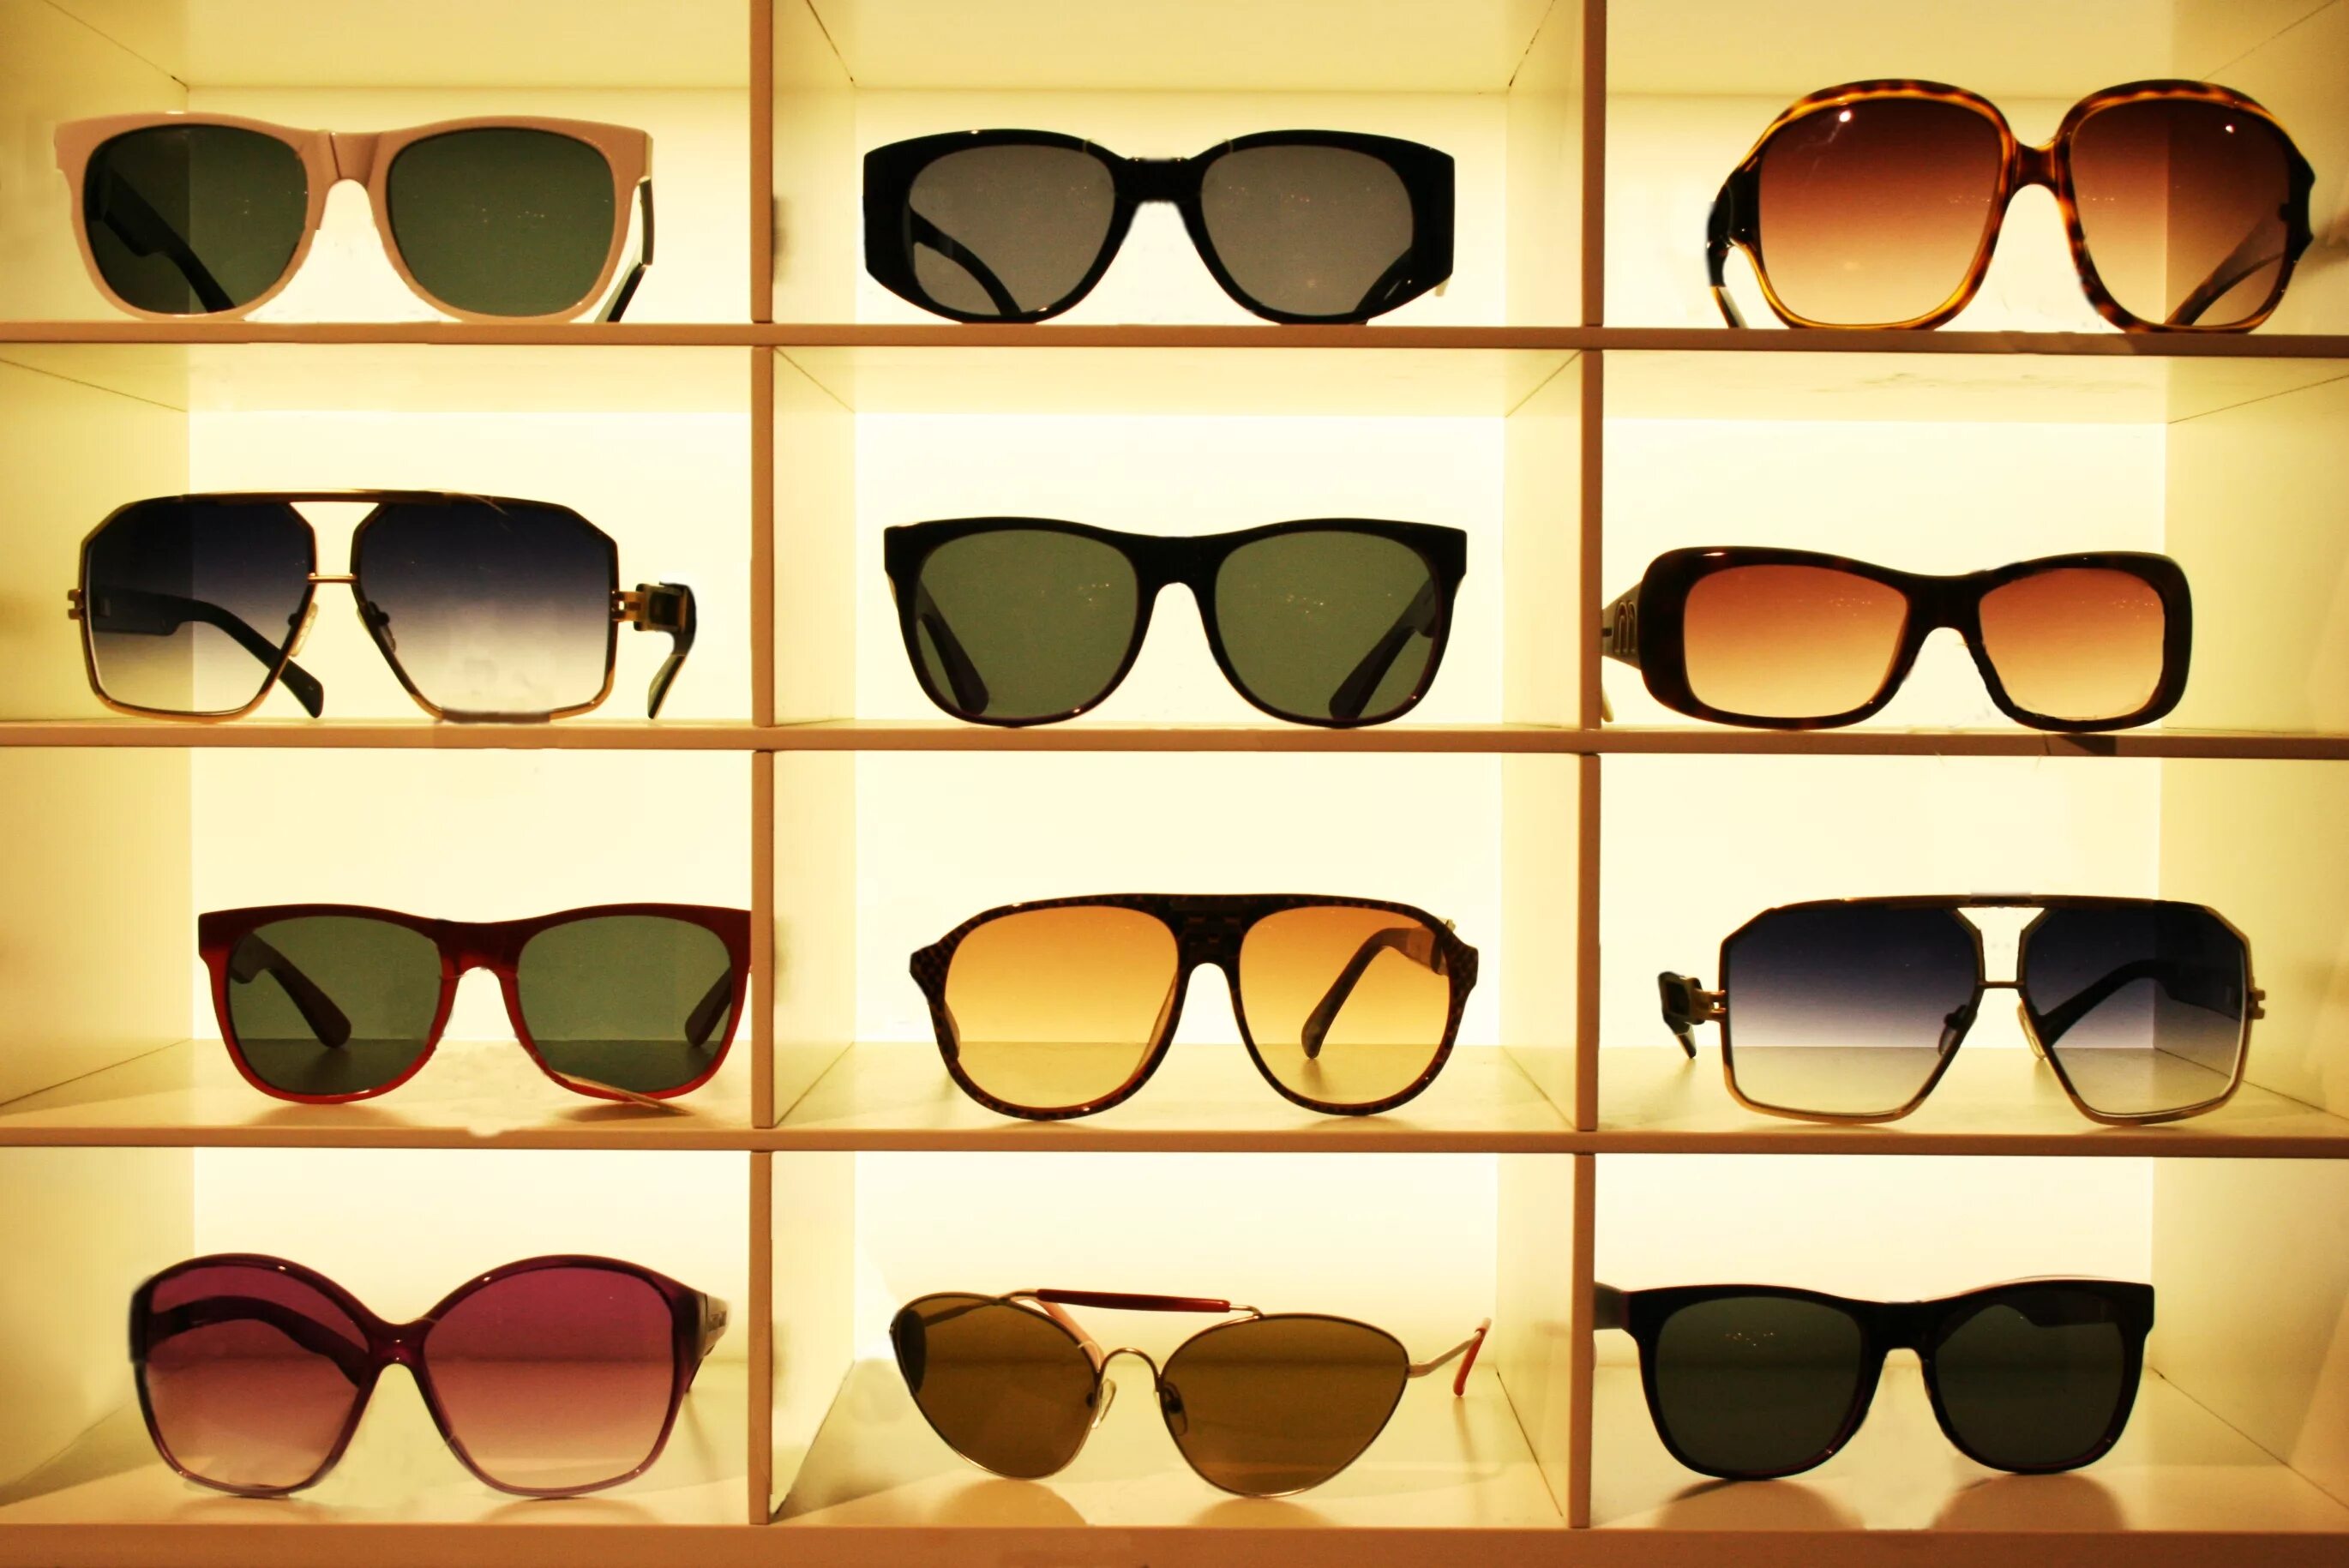 Как по английски будет очки. Солнечные очки. Формы очков солнцезащитных. Разнообразные очки. Солнцезащитные очки в оптике.